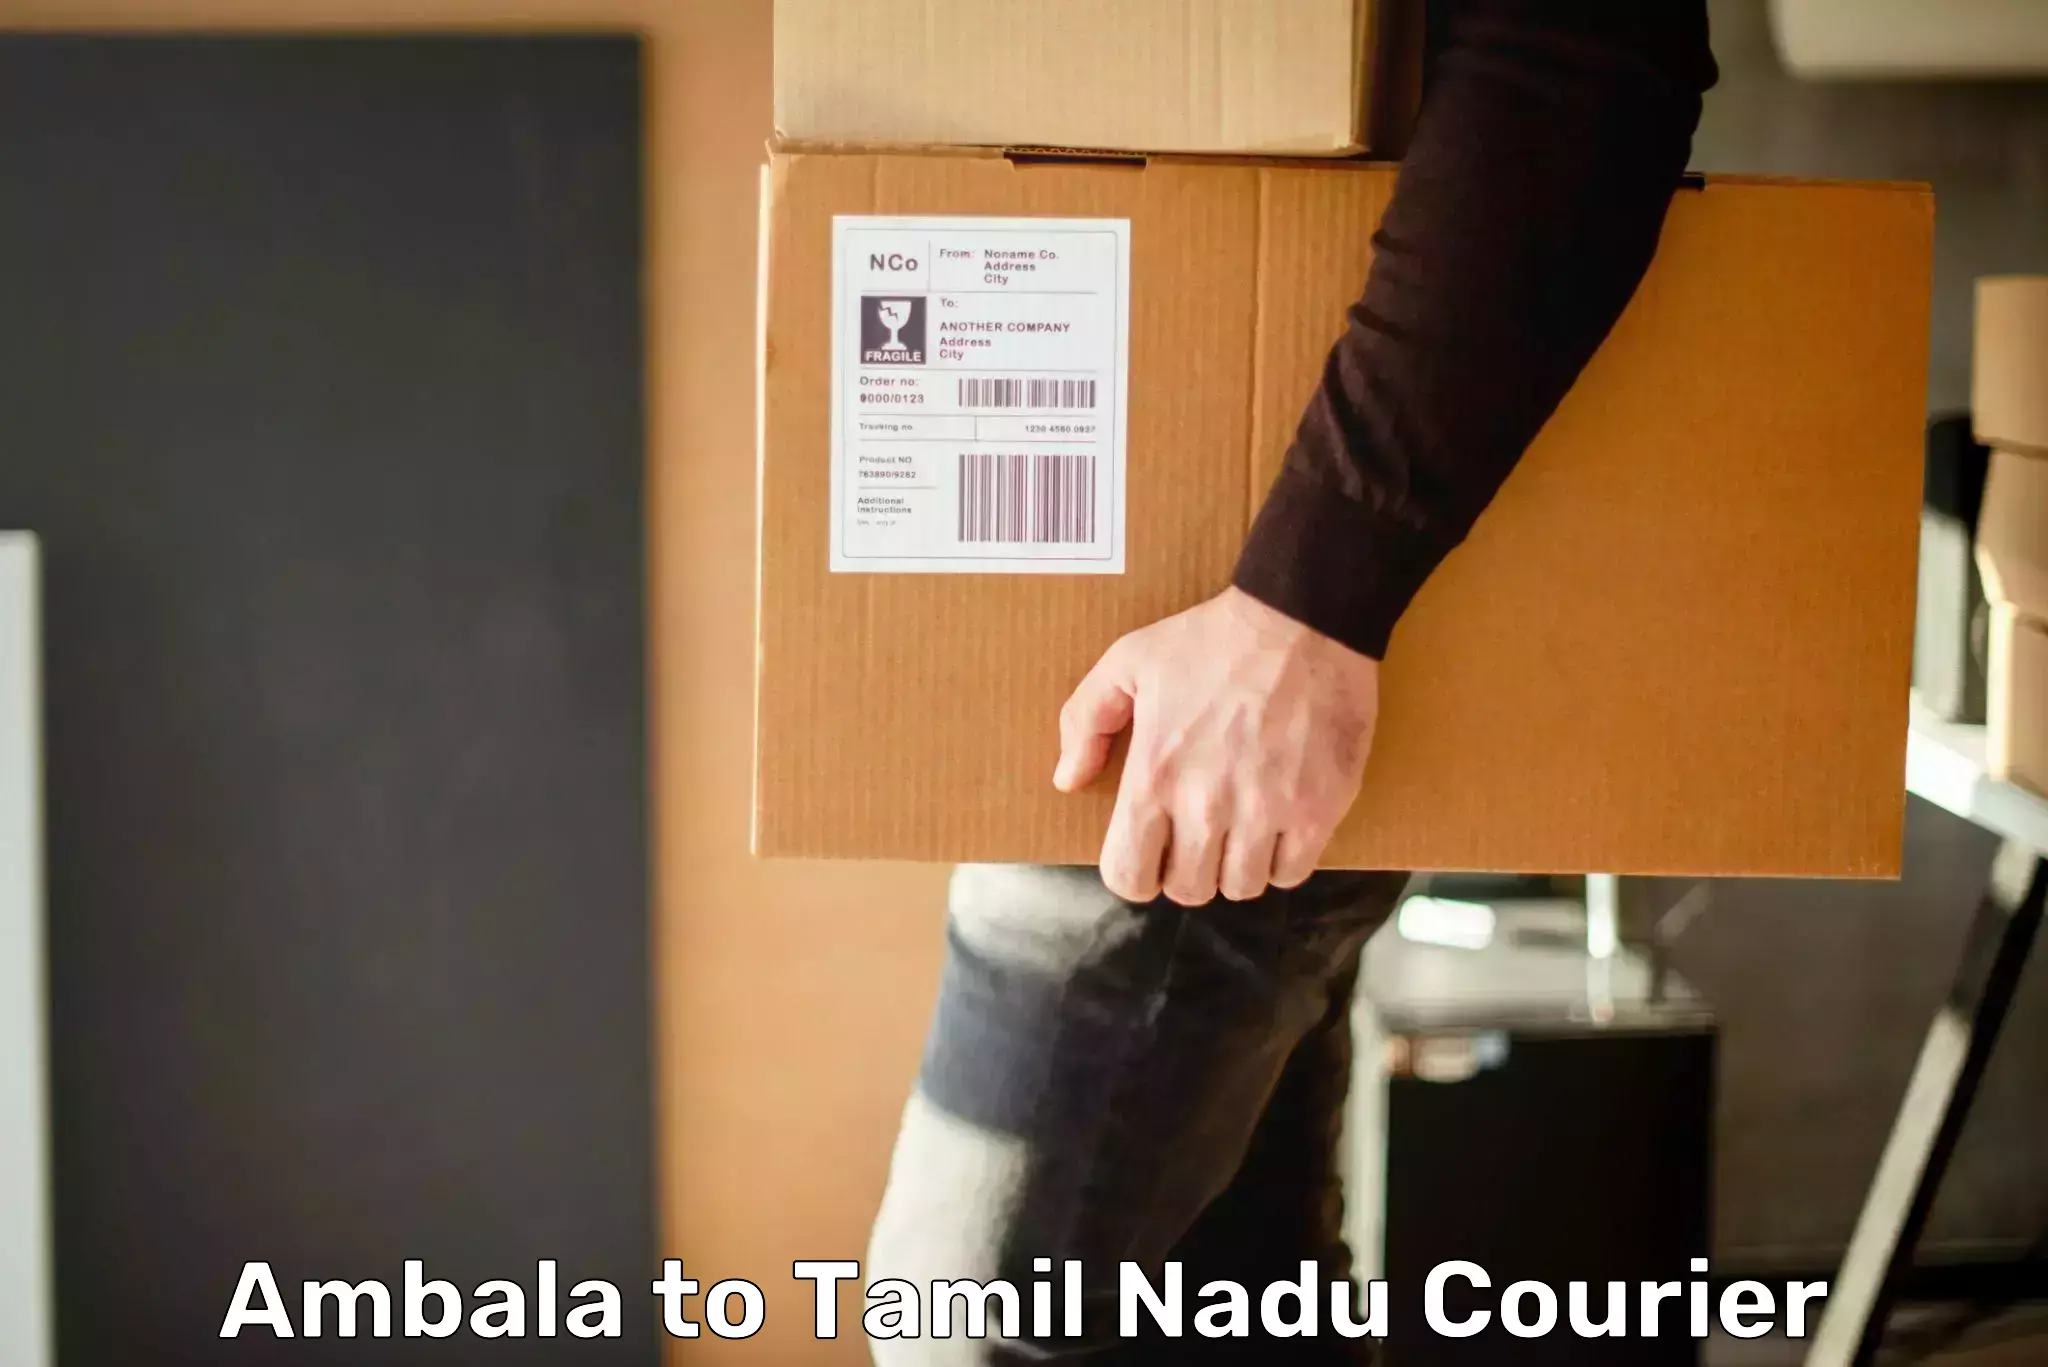 Optimized shipping routes Ambala to Cuddalore